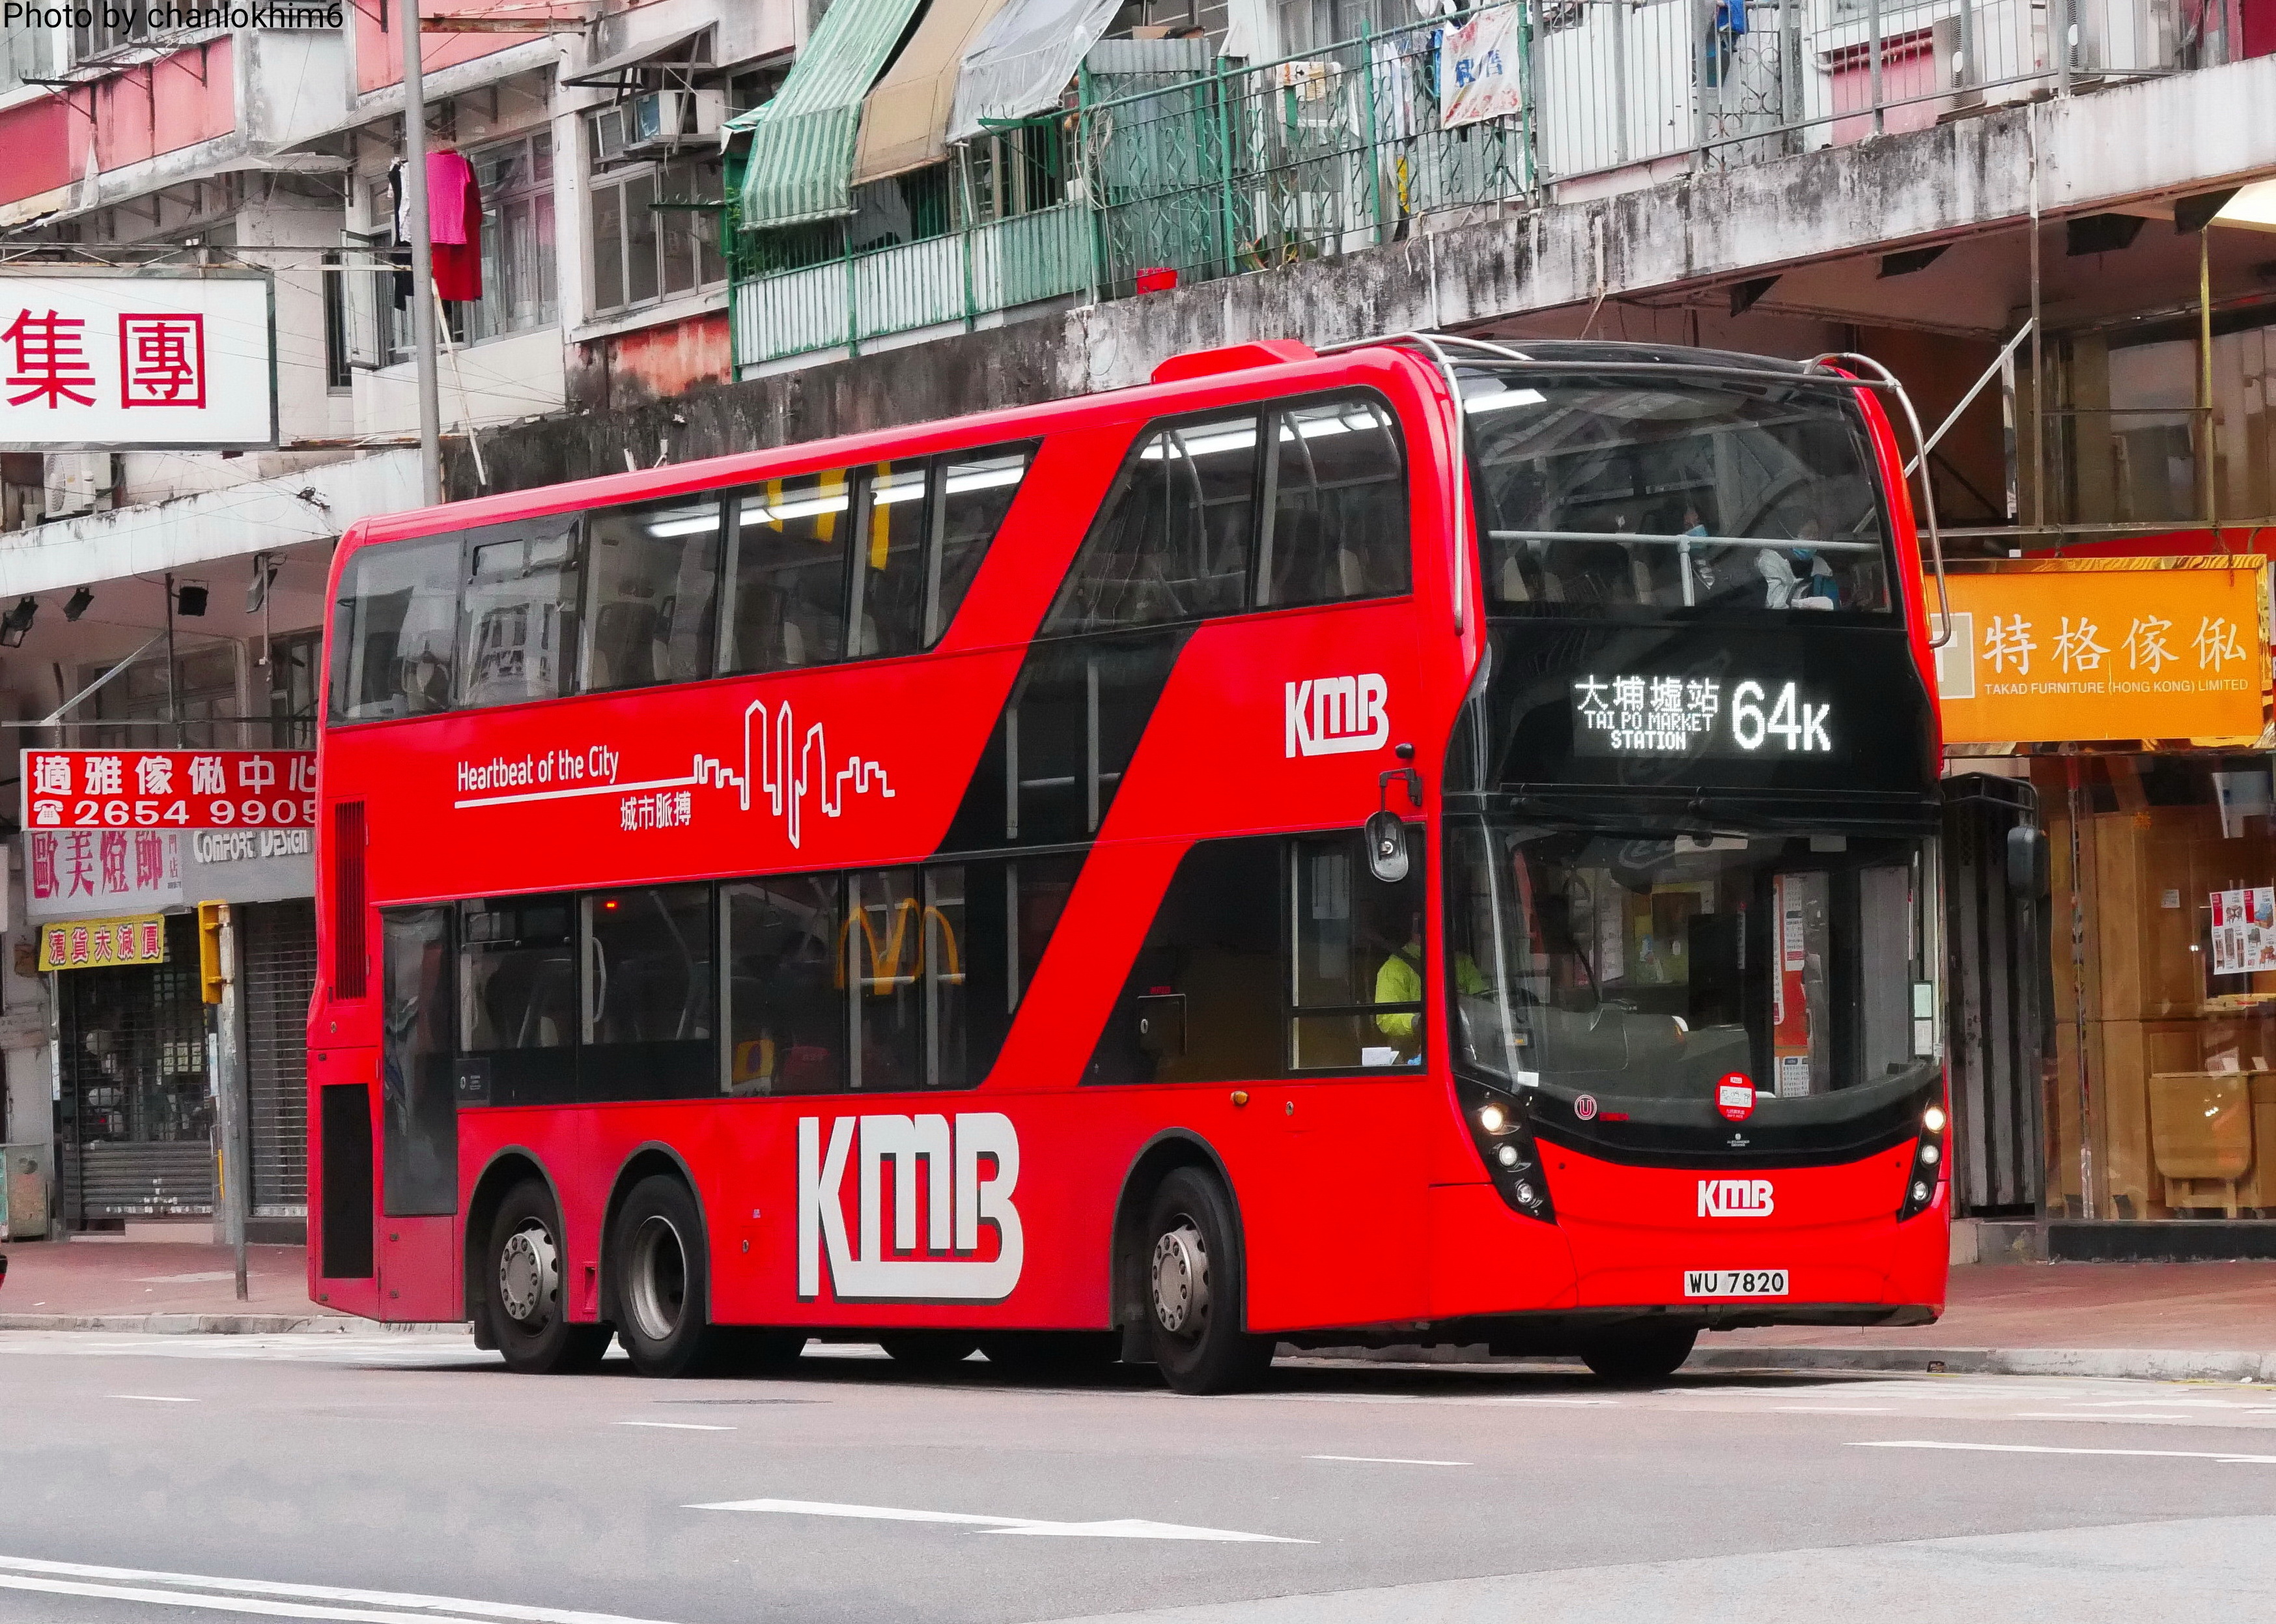 九巴64k線 香港巴士大典 Fandom